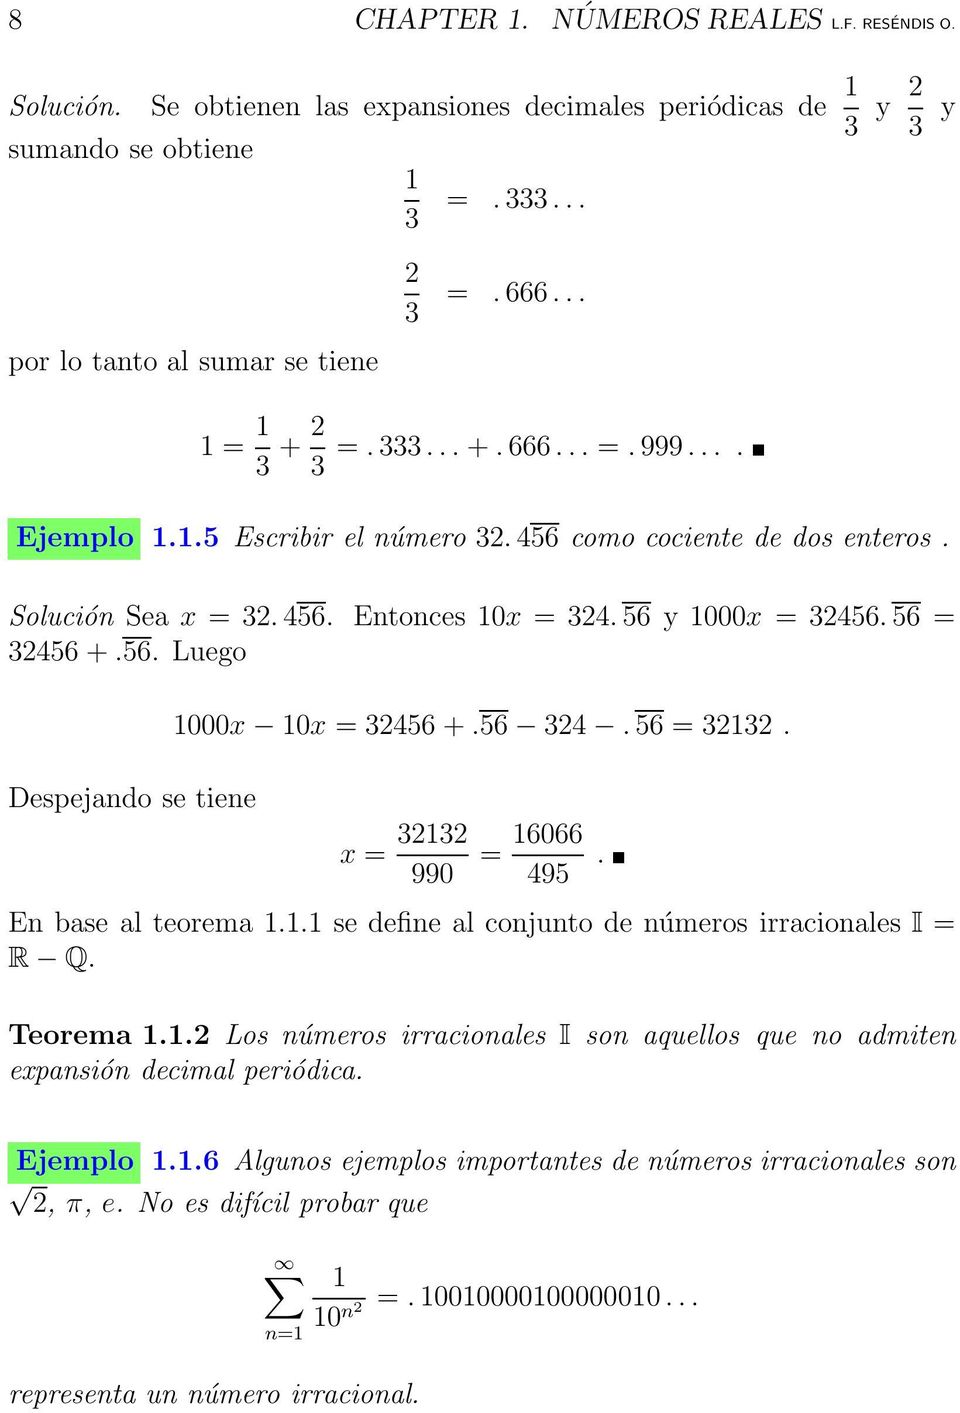 56. Luego Despejando se tiene 1000x 10x = 32456 +.56 324. 56 = 32132. x = 32132 990 = 16066 495. En base al teorema 1.1.1 se define al conjunto de números irracionales I = R Q. Teorema 1.1.2 Los números irracionales I son aquellos que no admiten expansión decimal periódica.